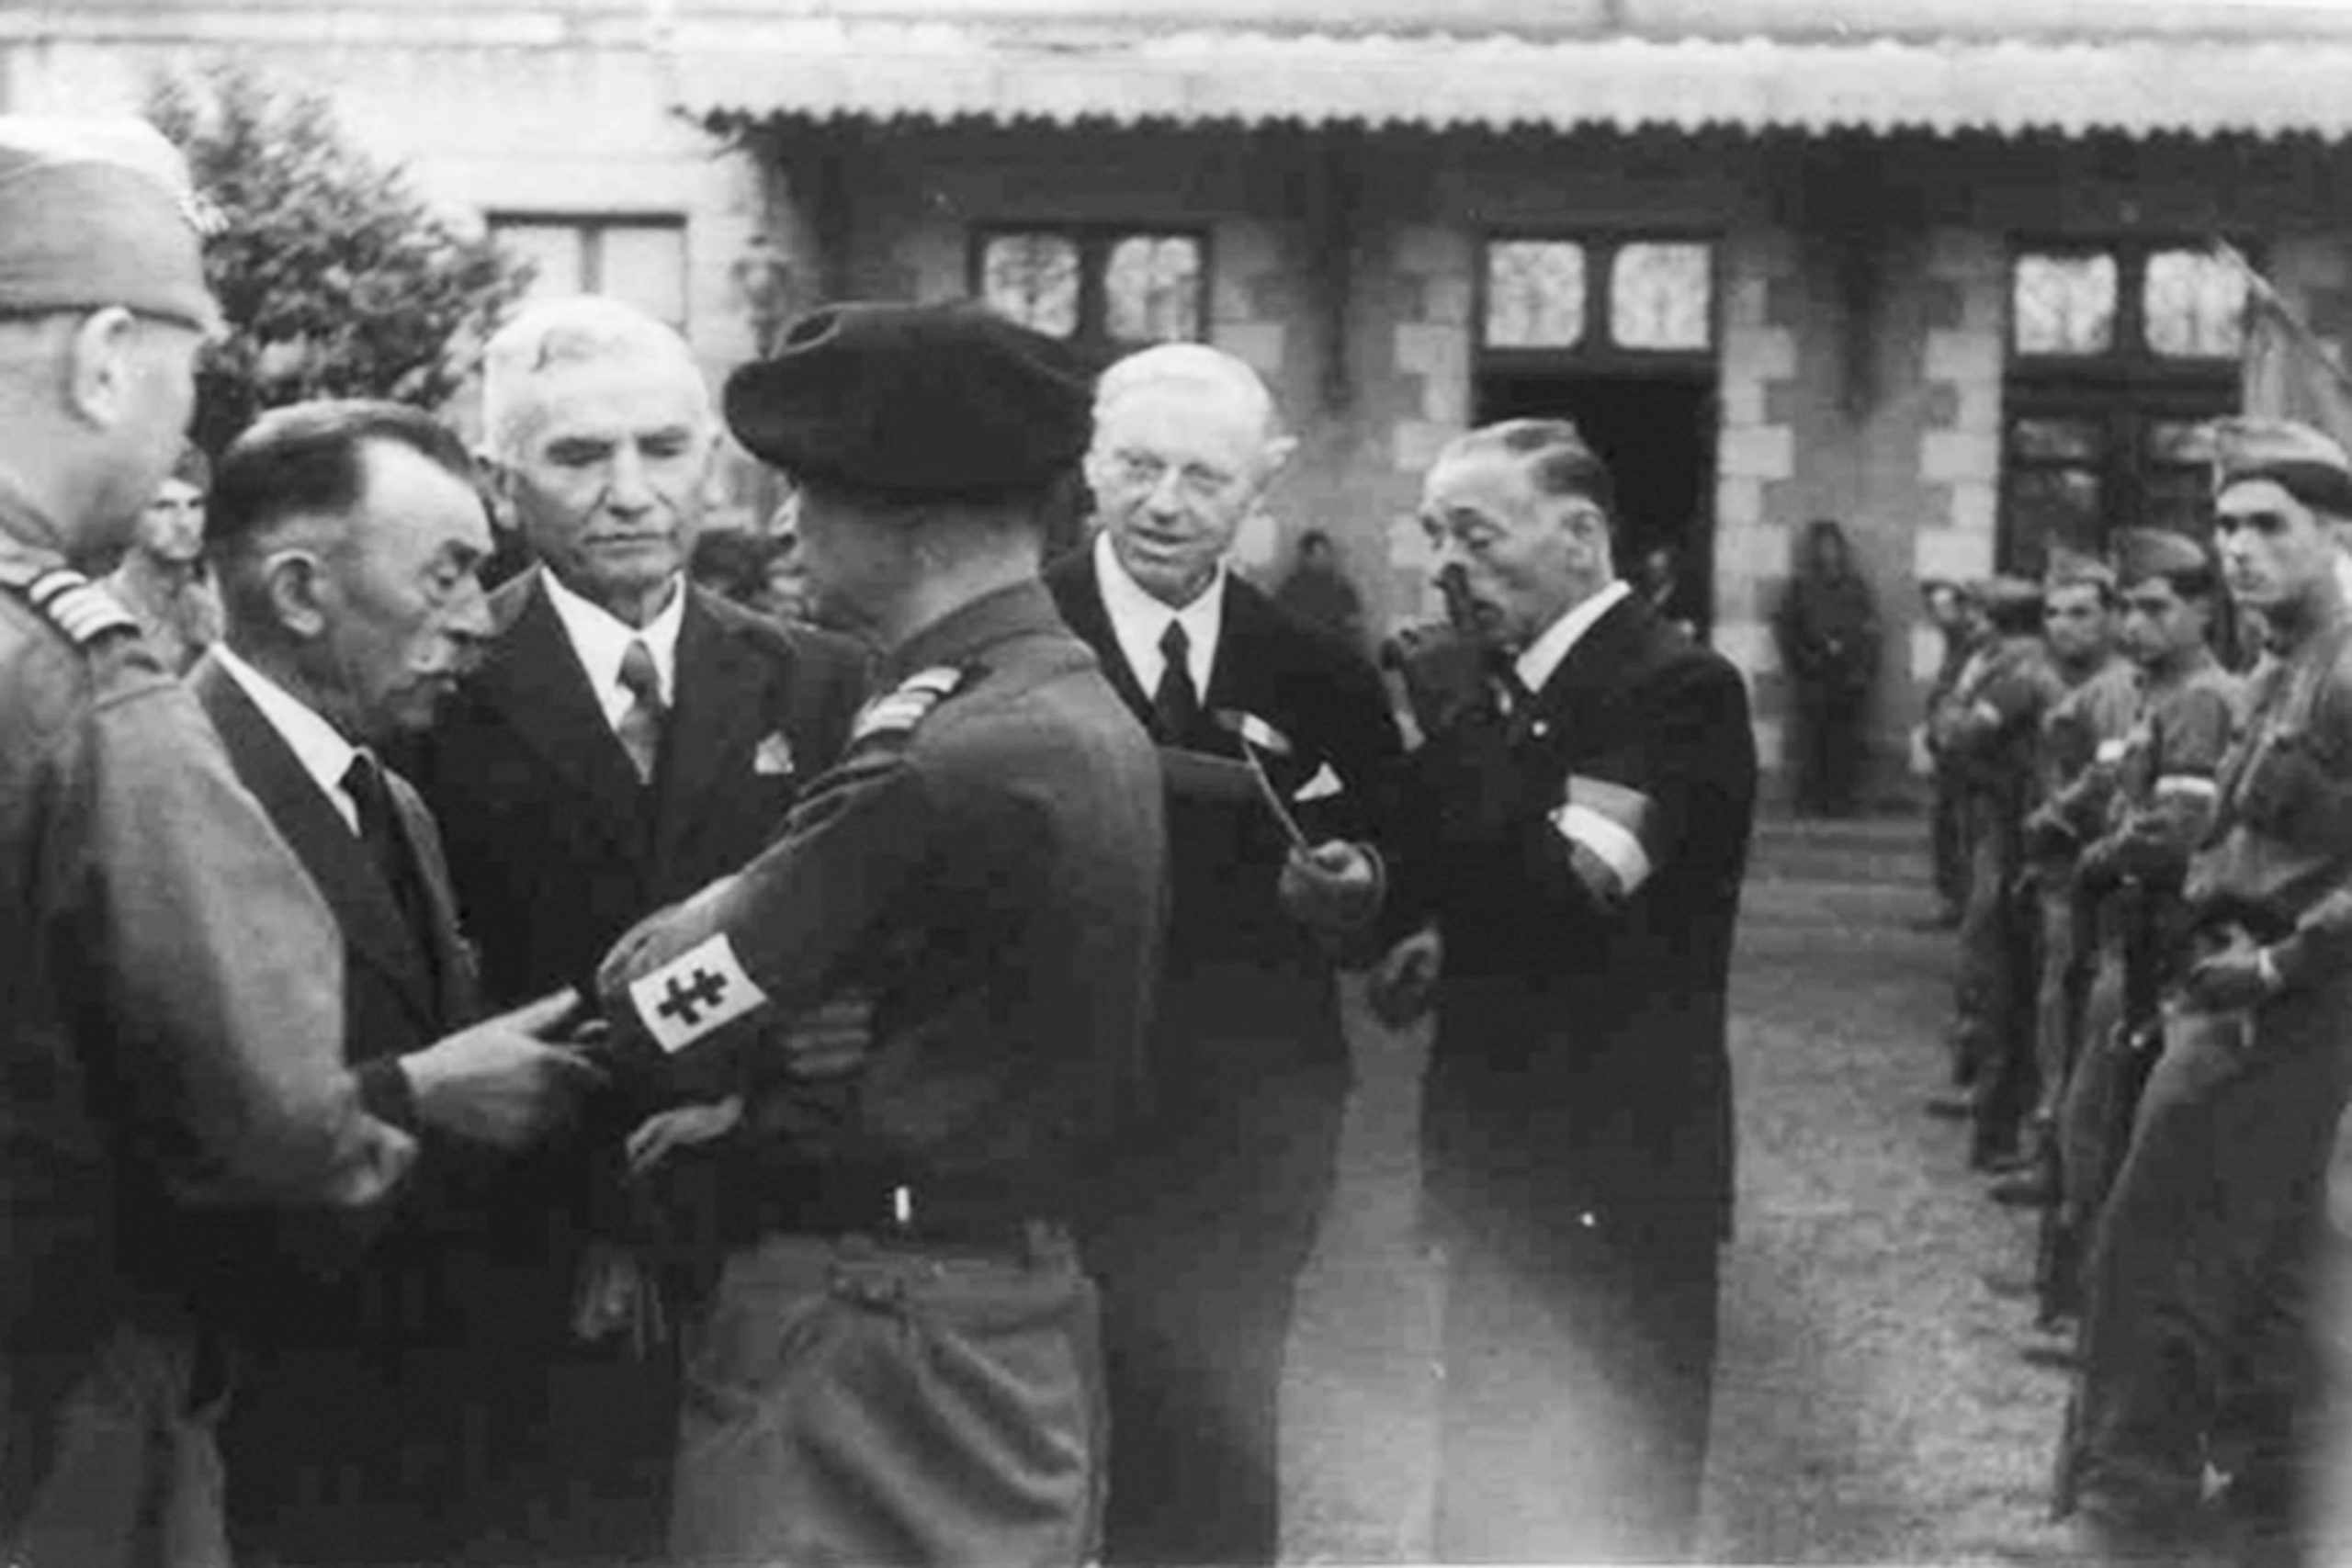 Le 17 septembre 1944, jour de l'installation des nouvelles autorités à la préfecture, le préfet Martin converse avec le colonel Baffert devant Louis Joguet, président du CDL.